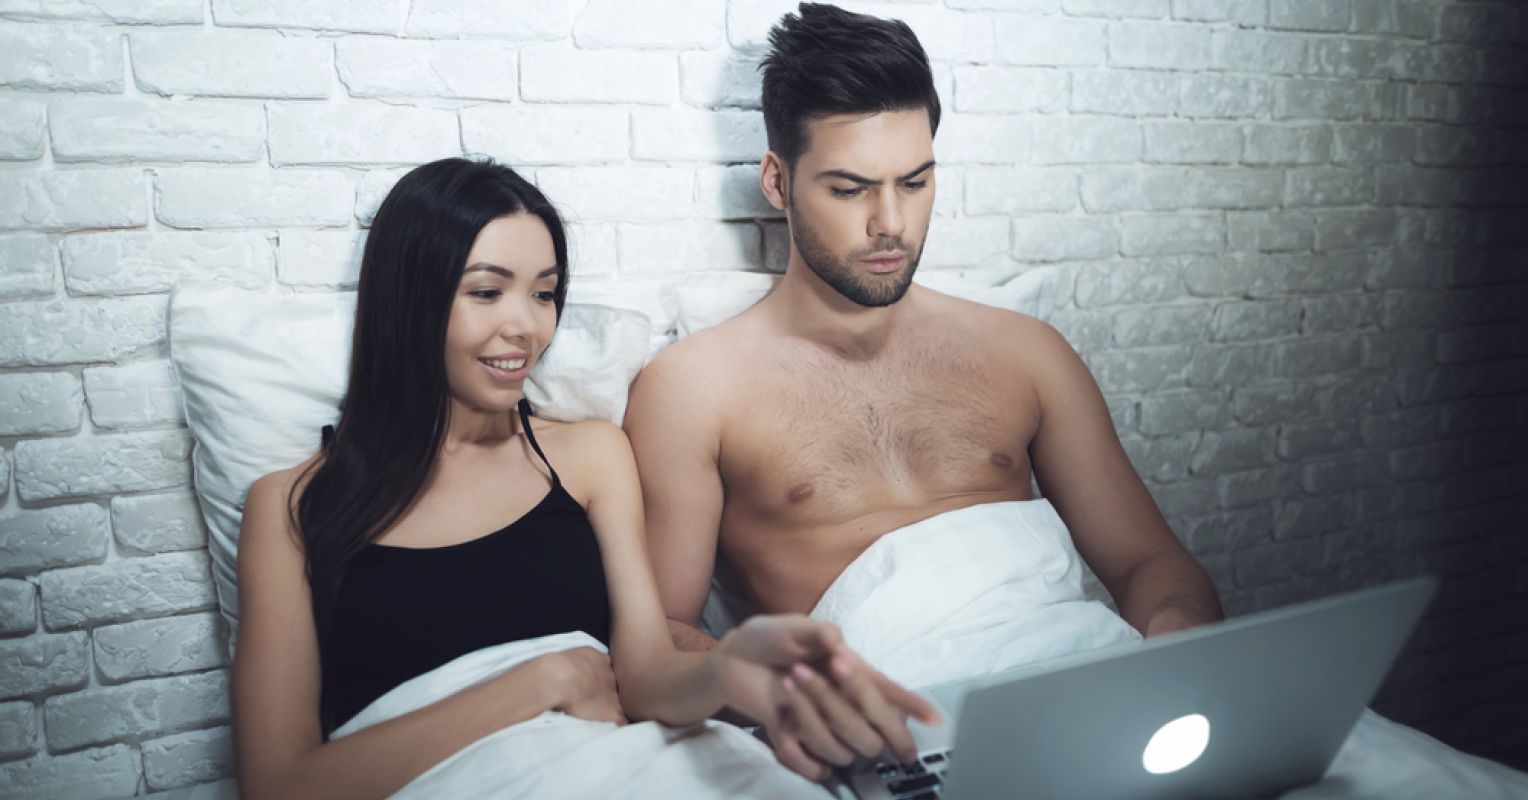 married men who secretly watch porn